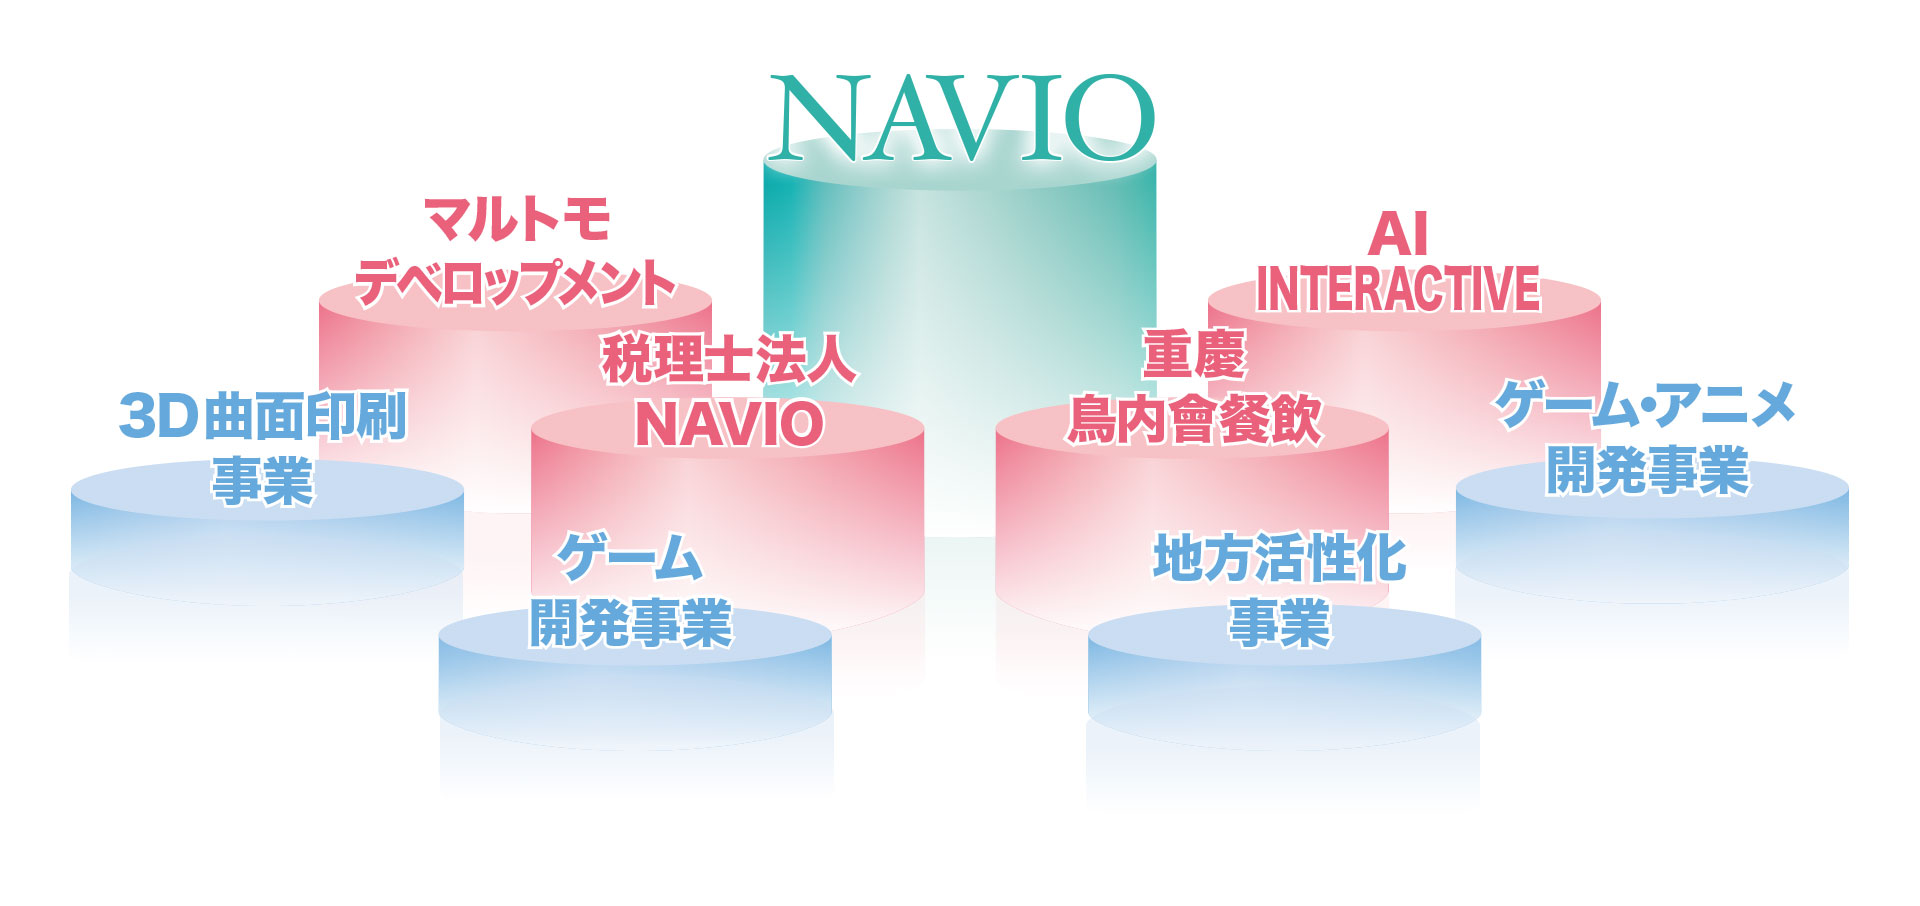 NAVIO Group